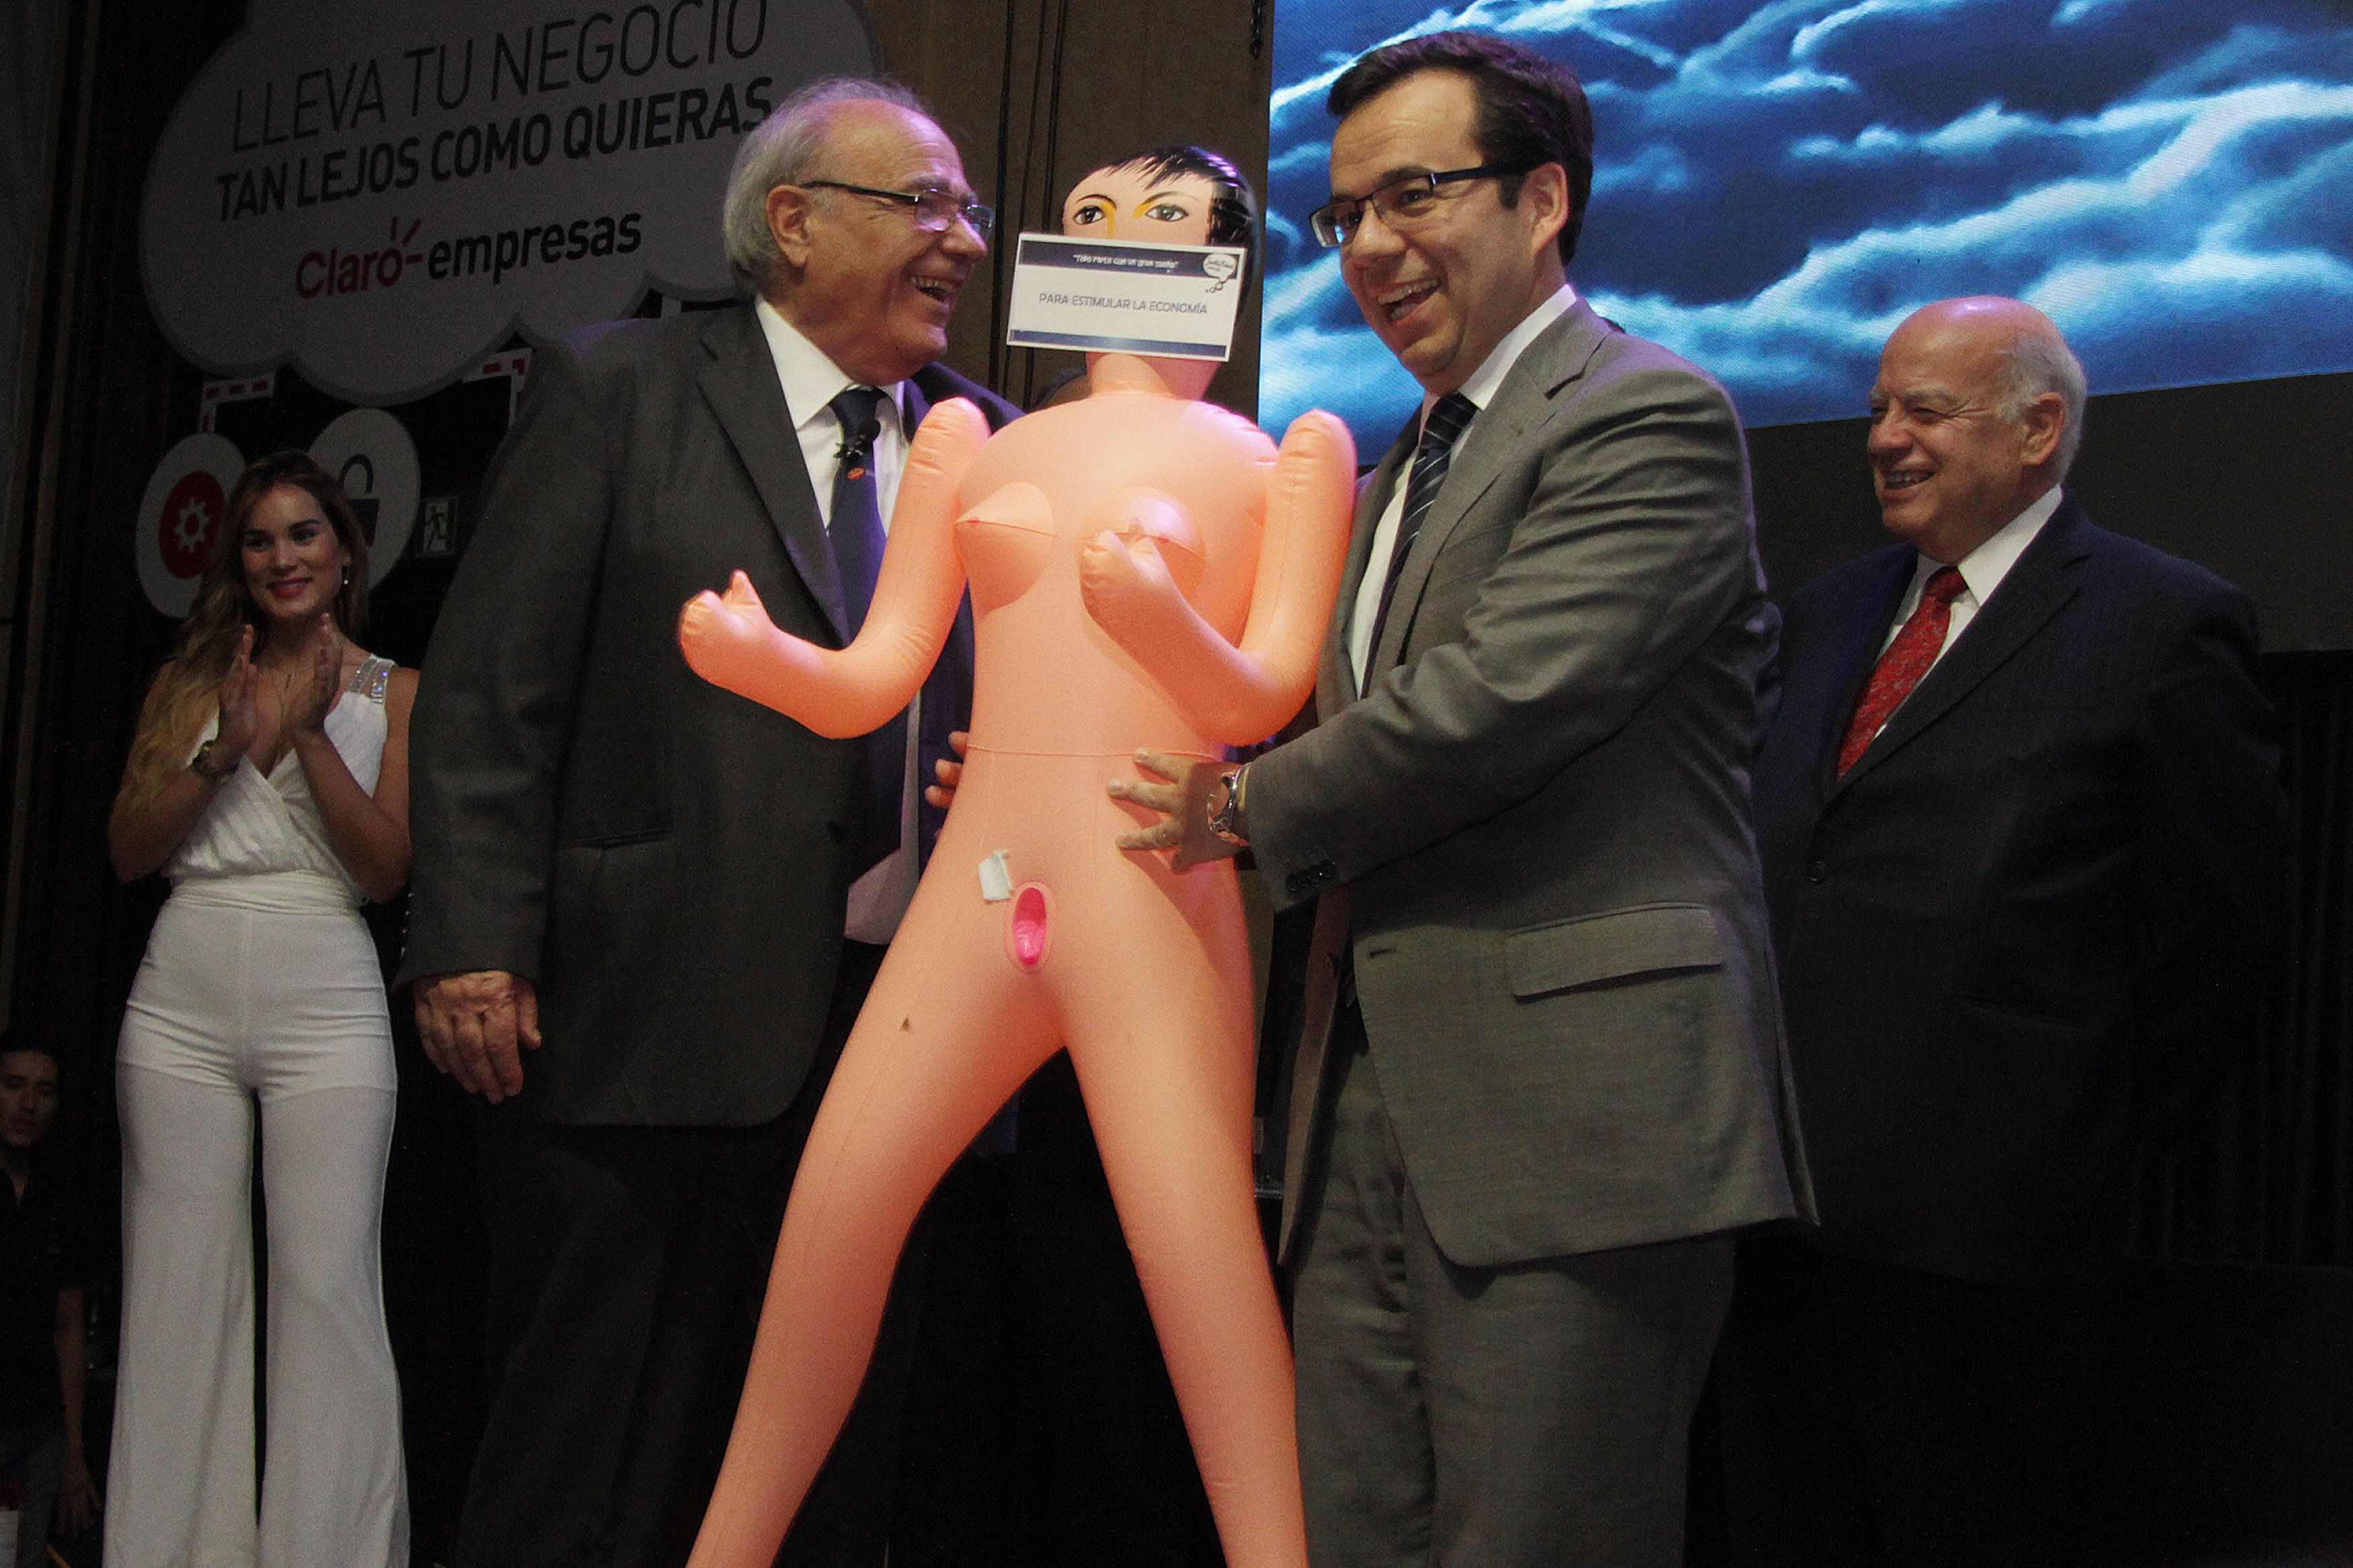 Un regalo machista al ministro de economía de Chile indigna al país